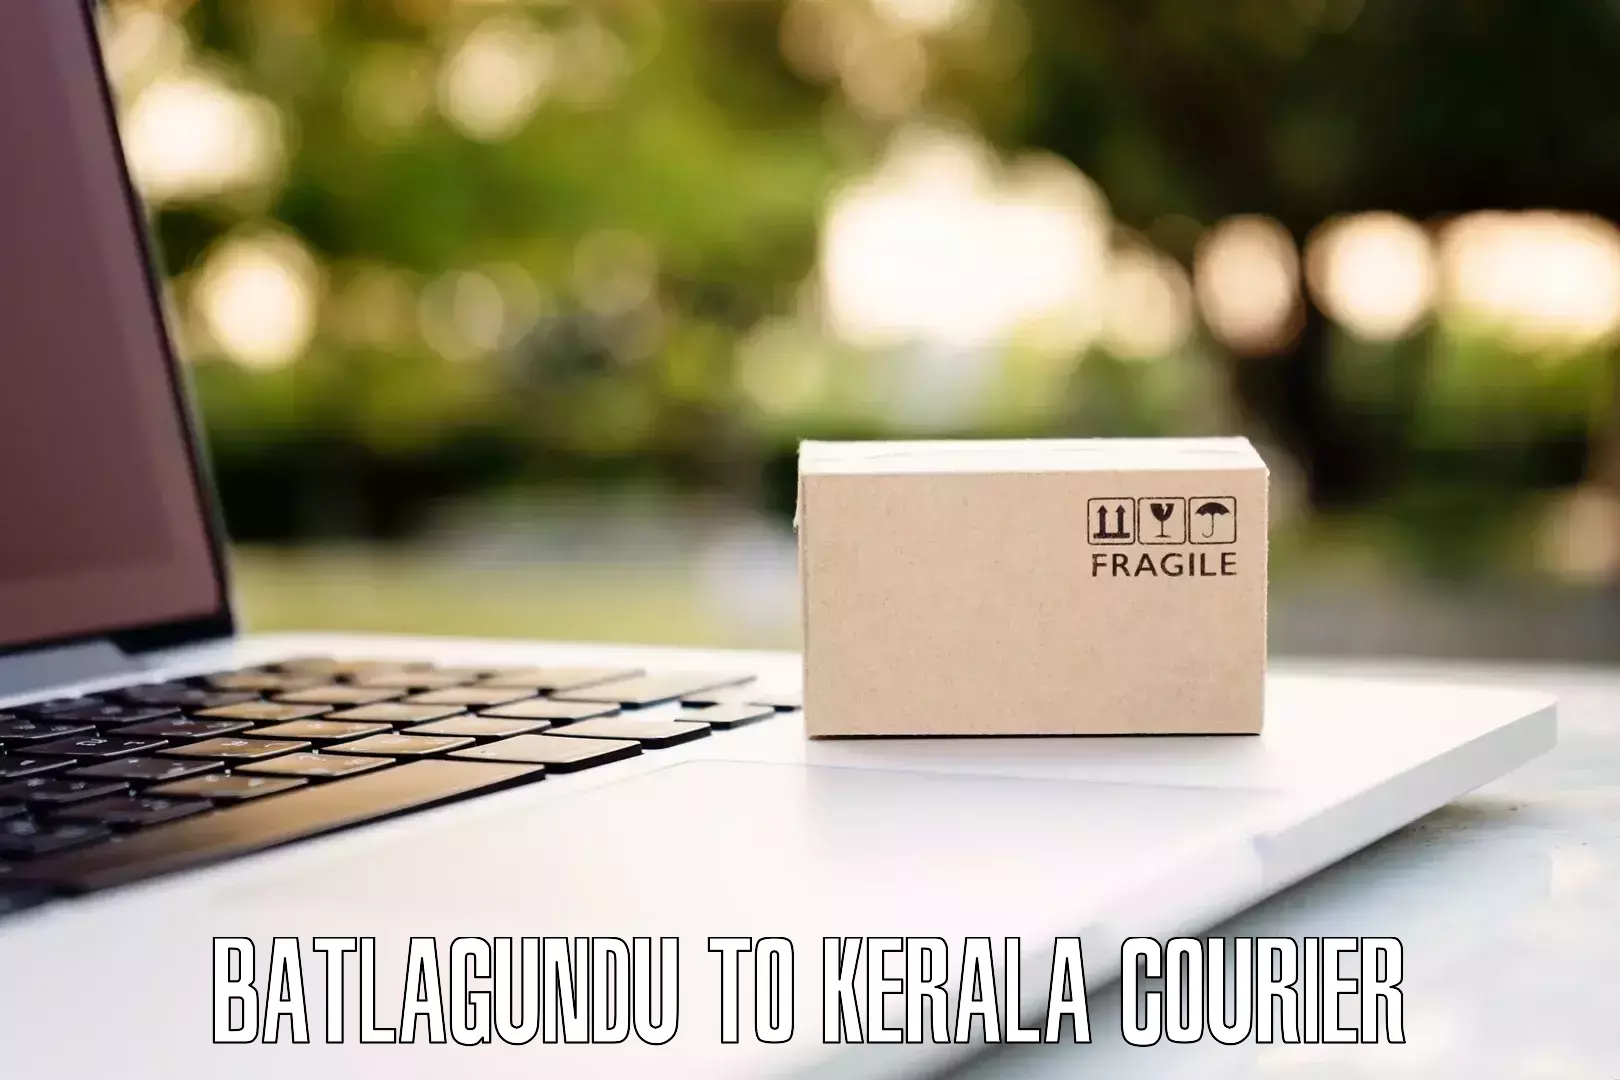 Online luggage shipping booking Batlagundu to Kuthiathode